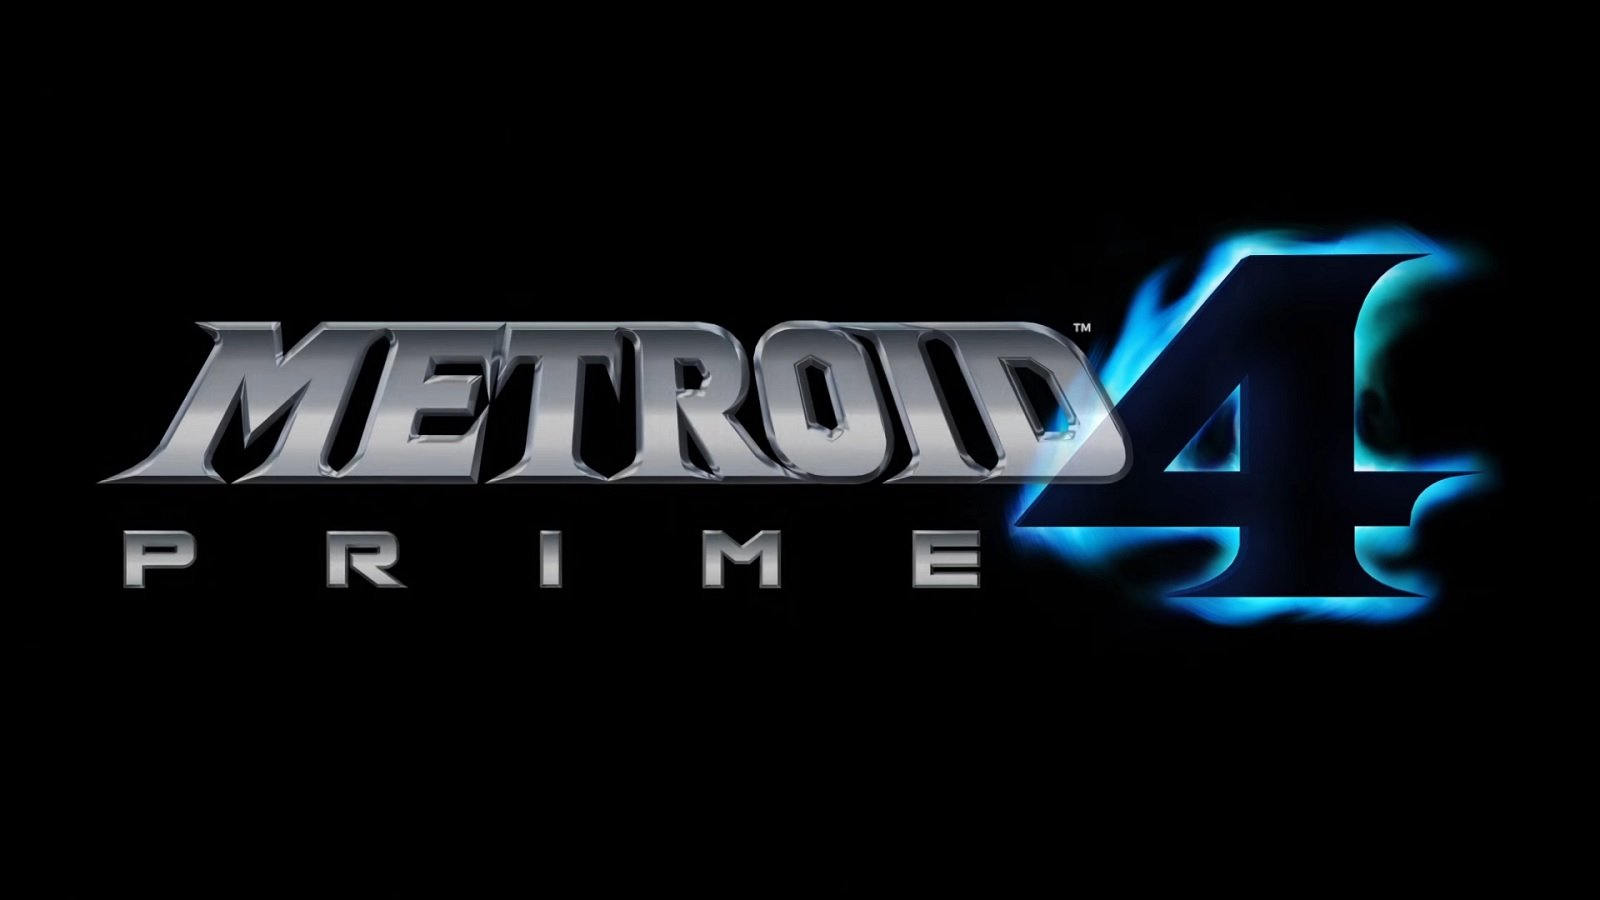 A Retro Studios, através de uma nova oferta de trabalho, indicou uma possível fase inicial de desenvolvimento de Metroid Prime 4